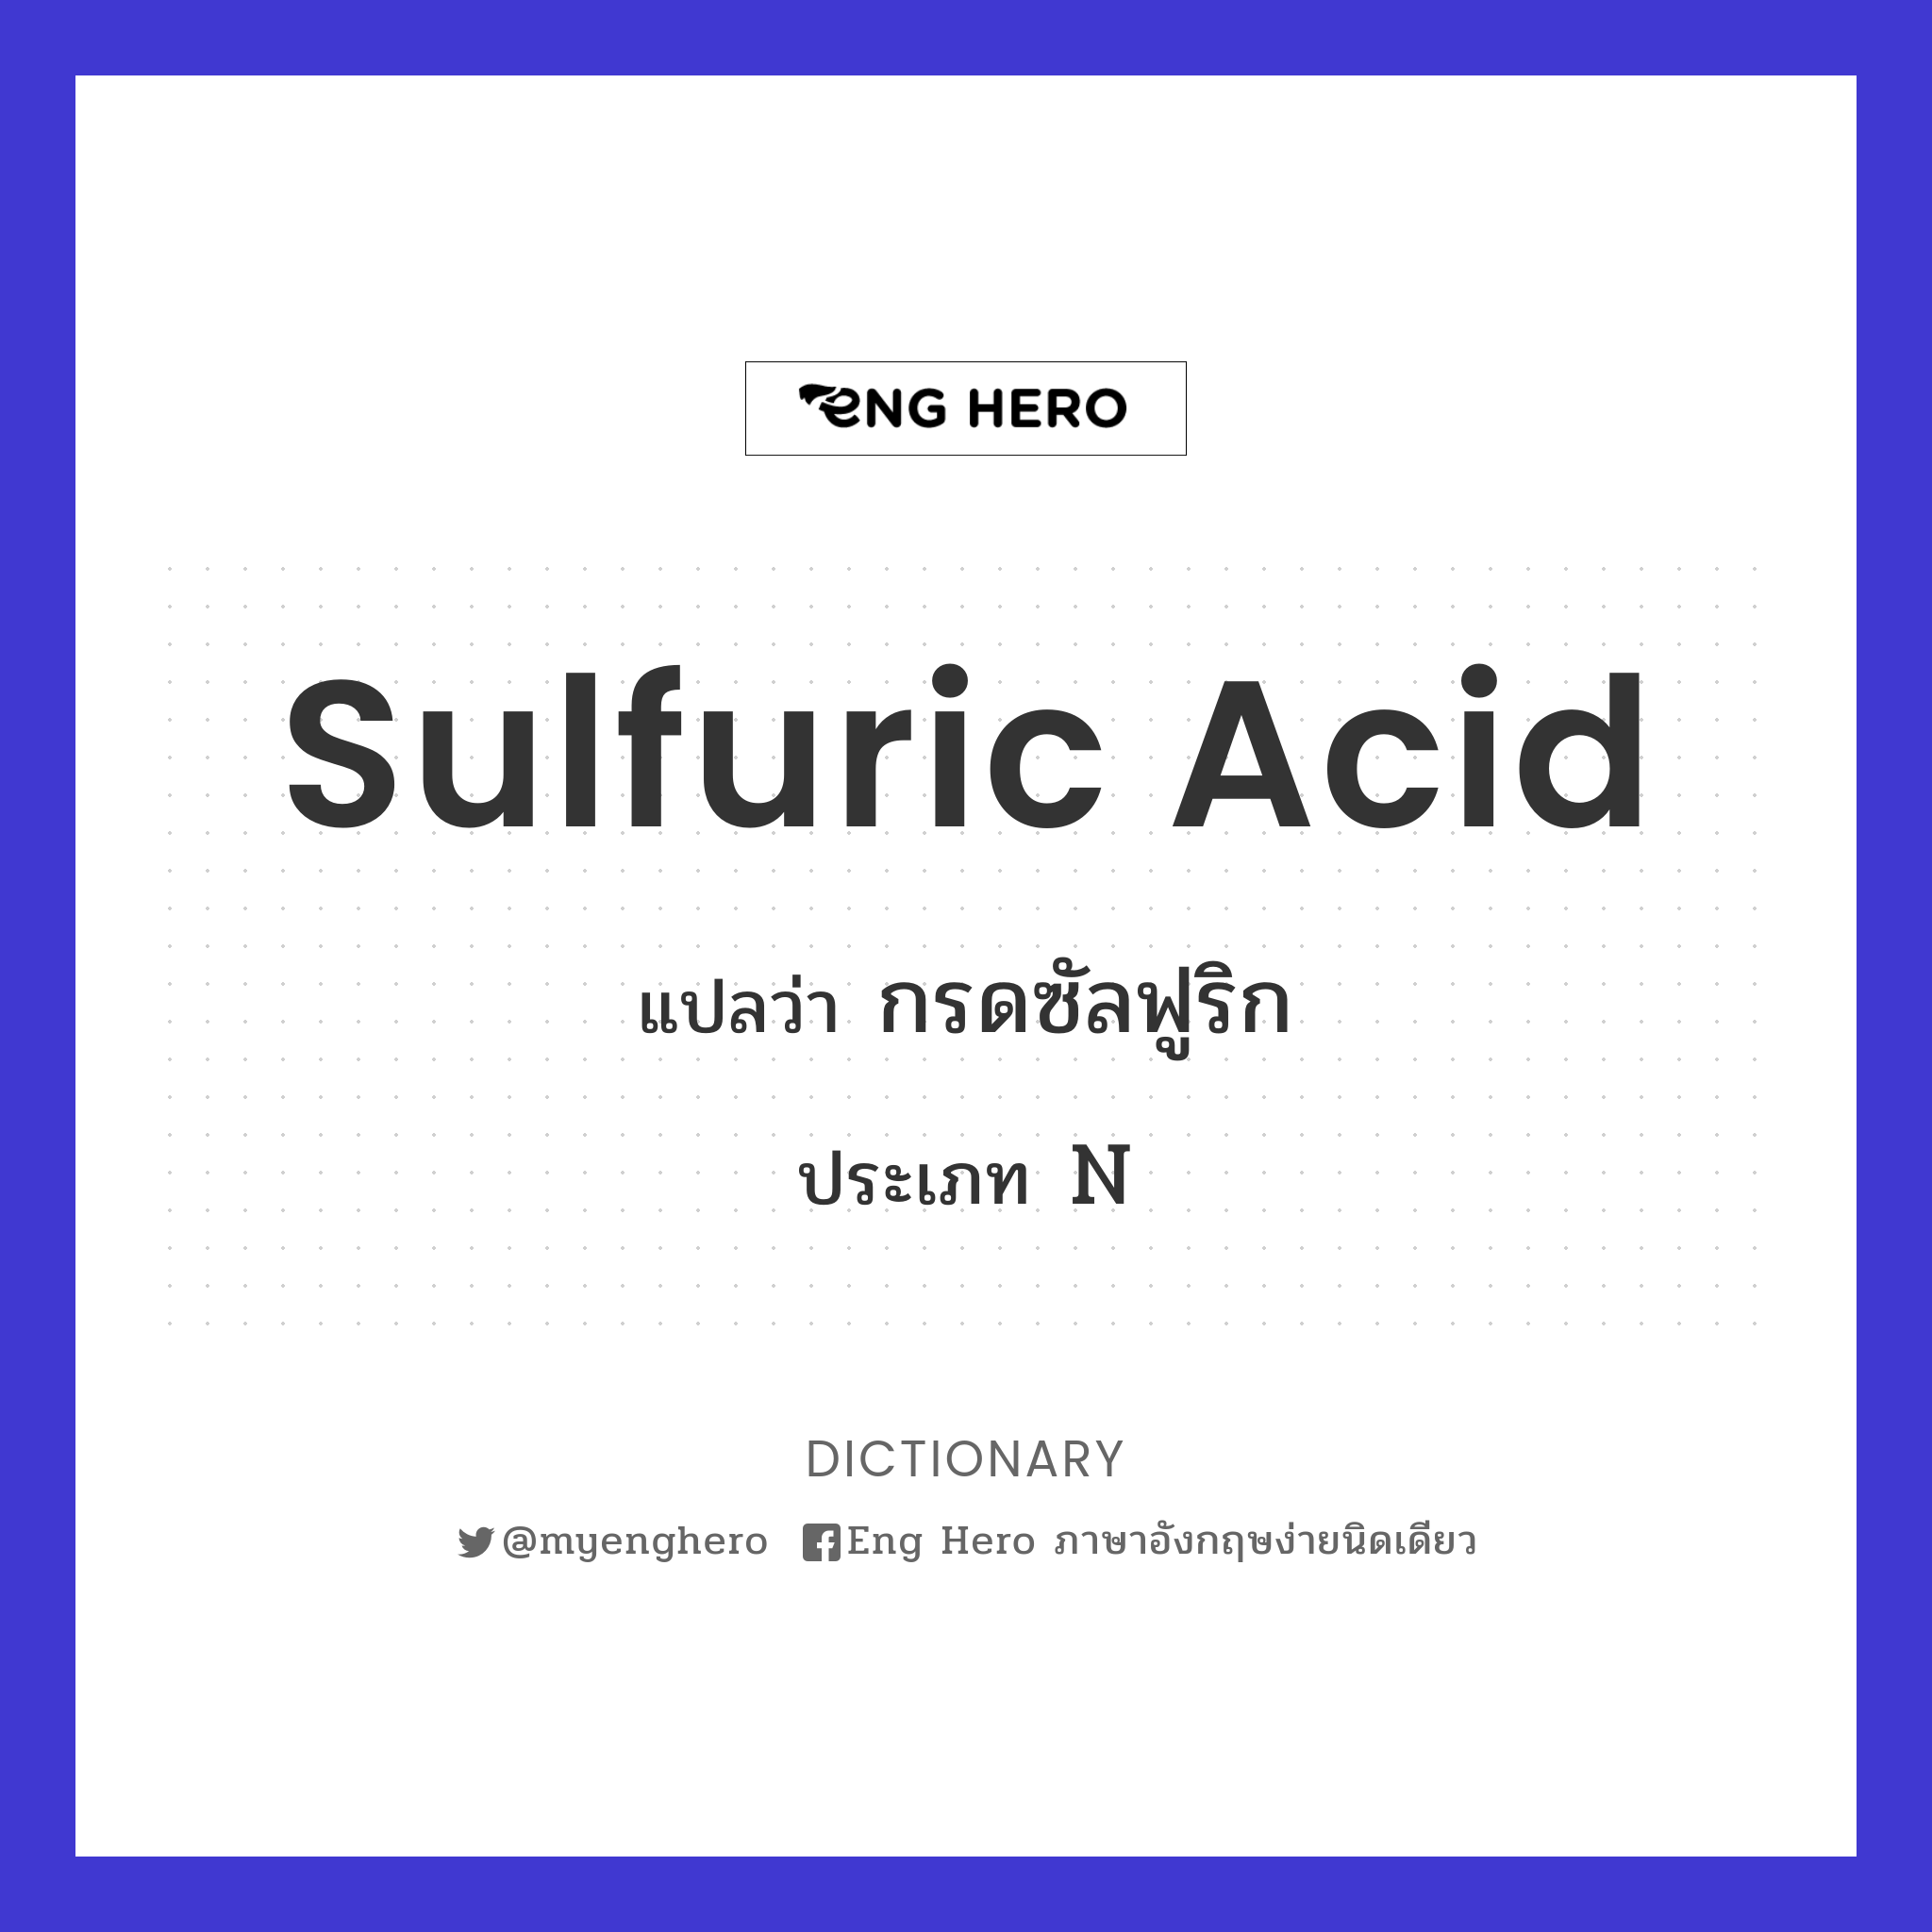 sulfuric acid